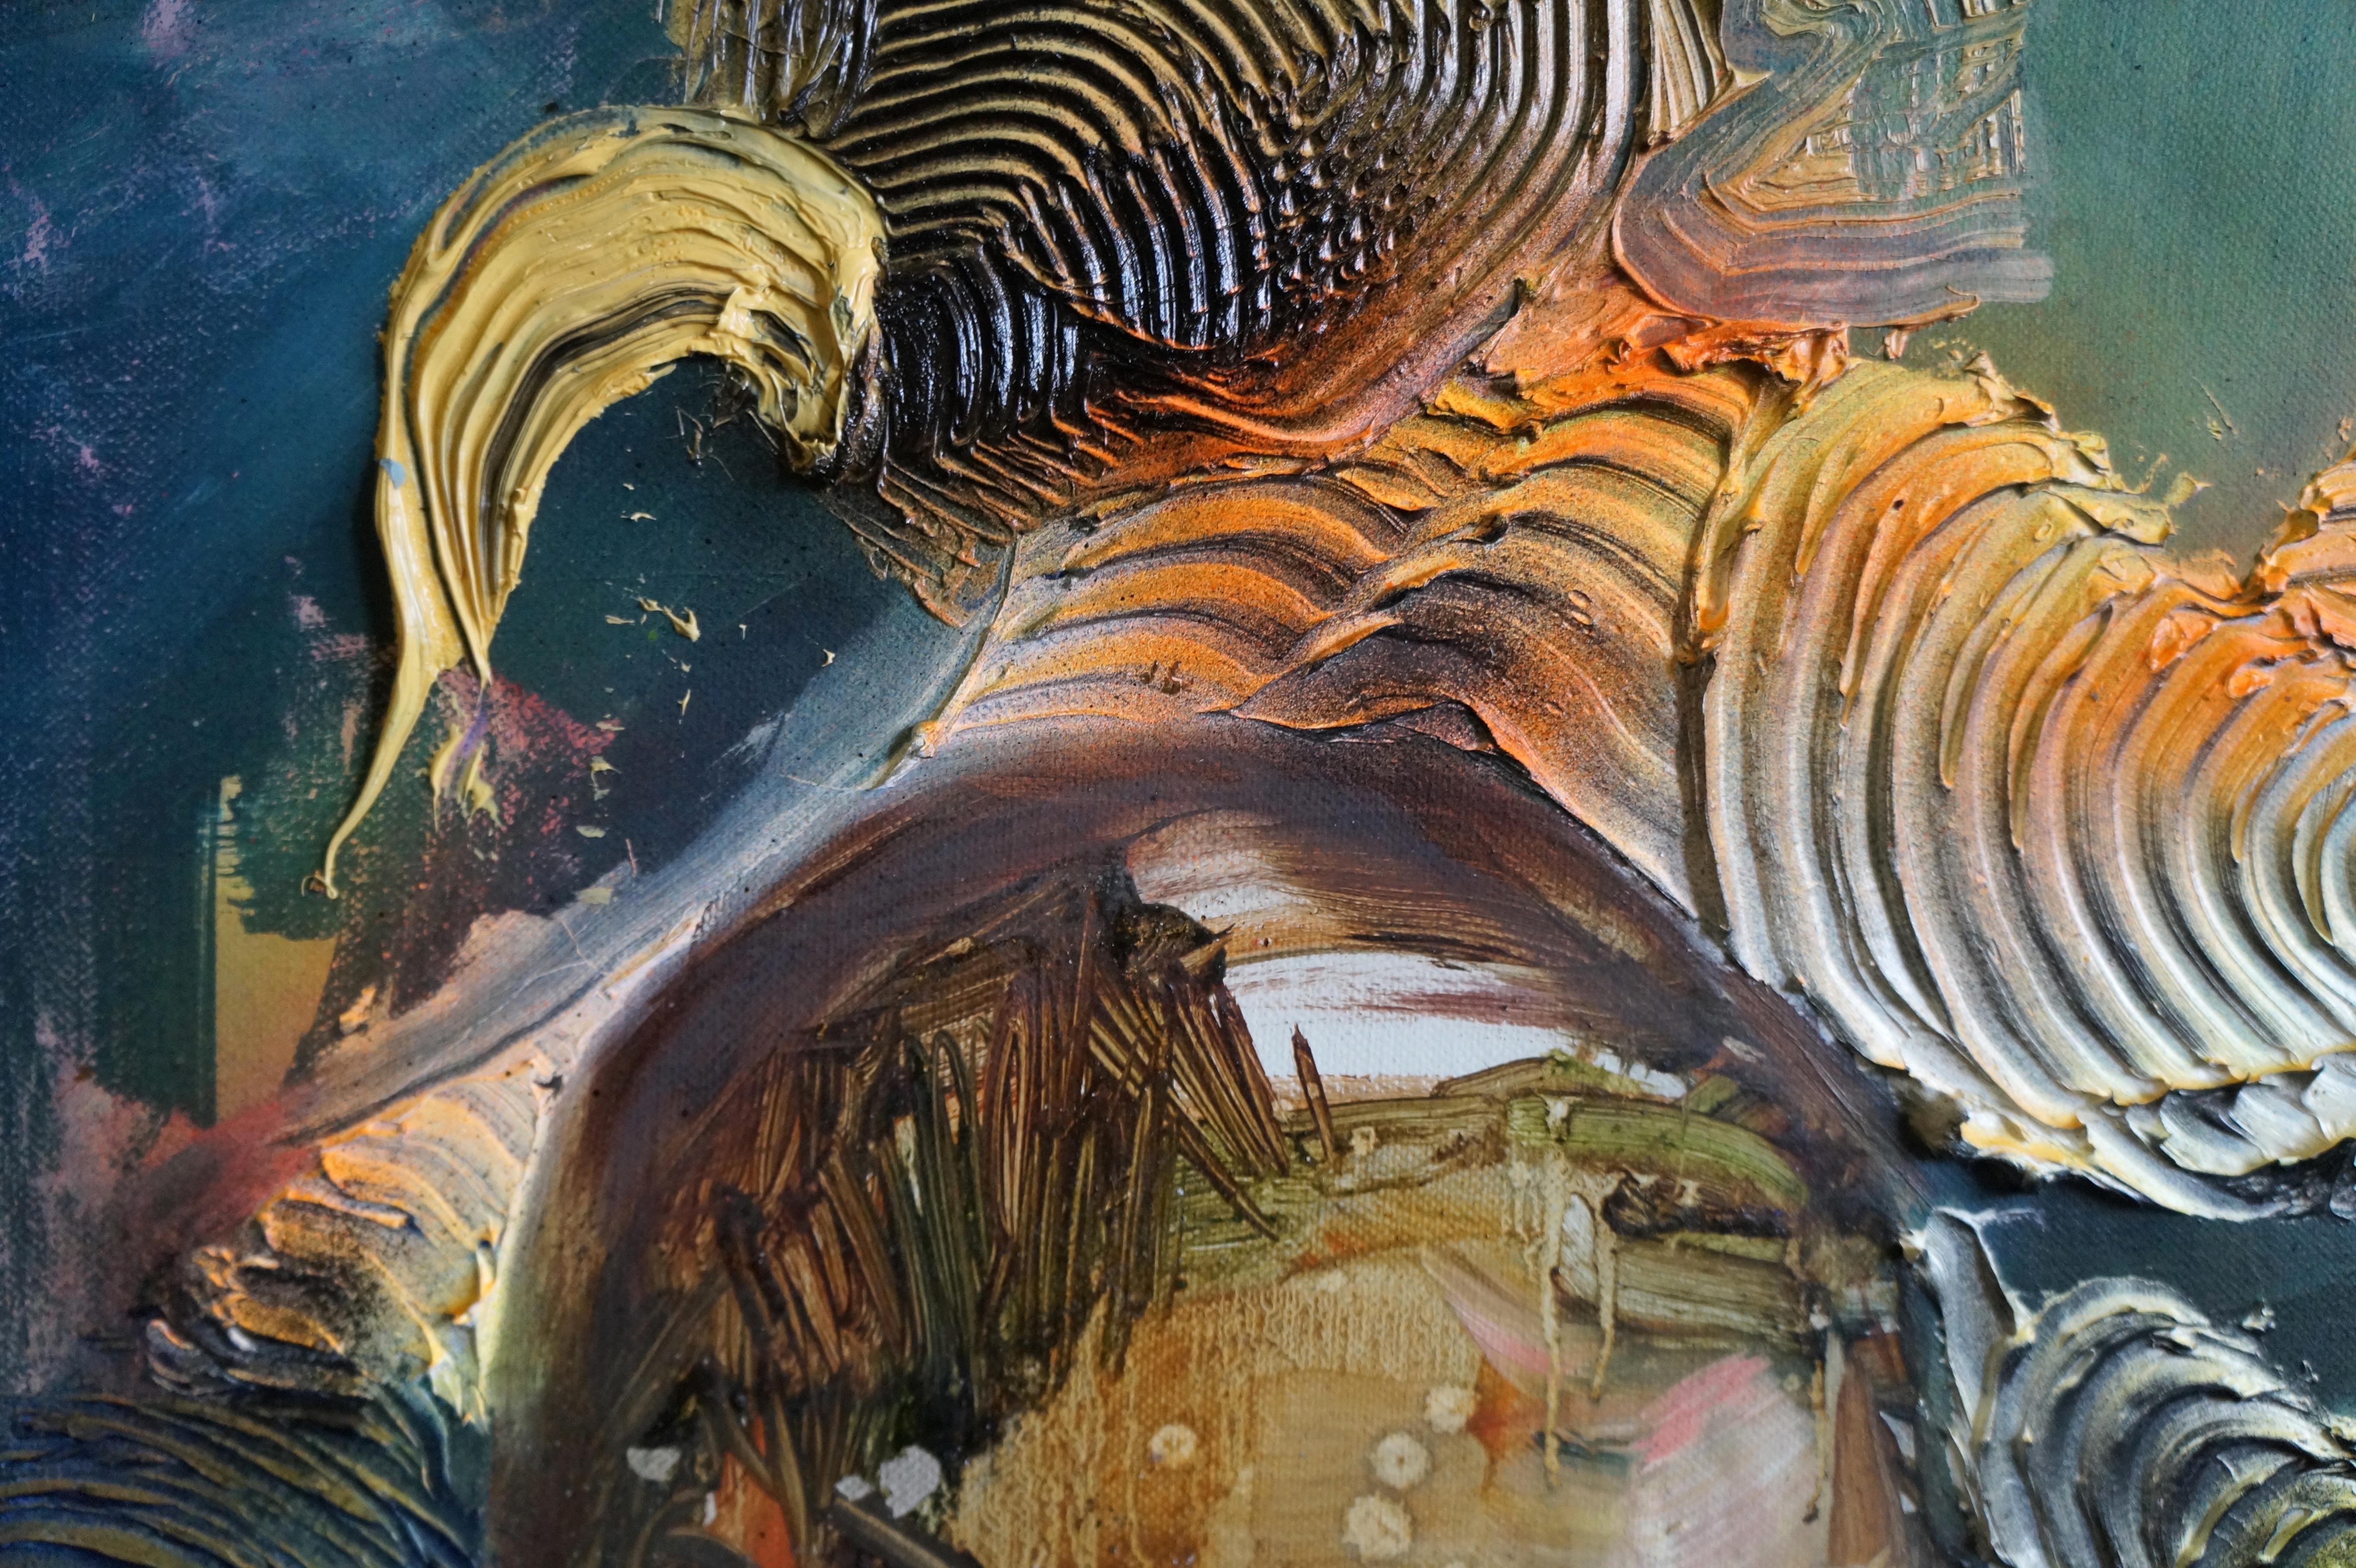 THE ABDUCTION - Zeitgenössische figurative Gemälde in Mischtechnik, Sprühfarbe, dunkel (Abstrakt), Painting, von Eleanor Aldrich